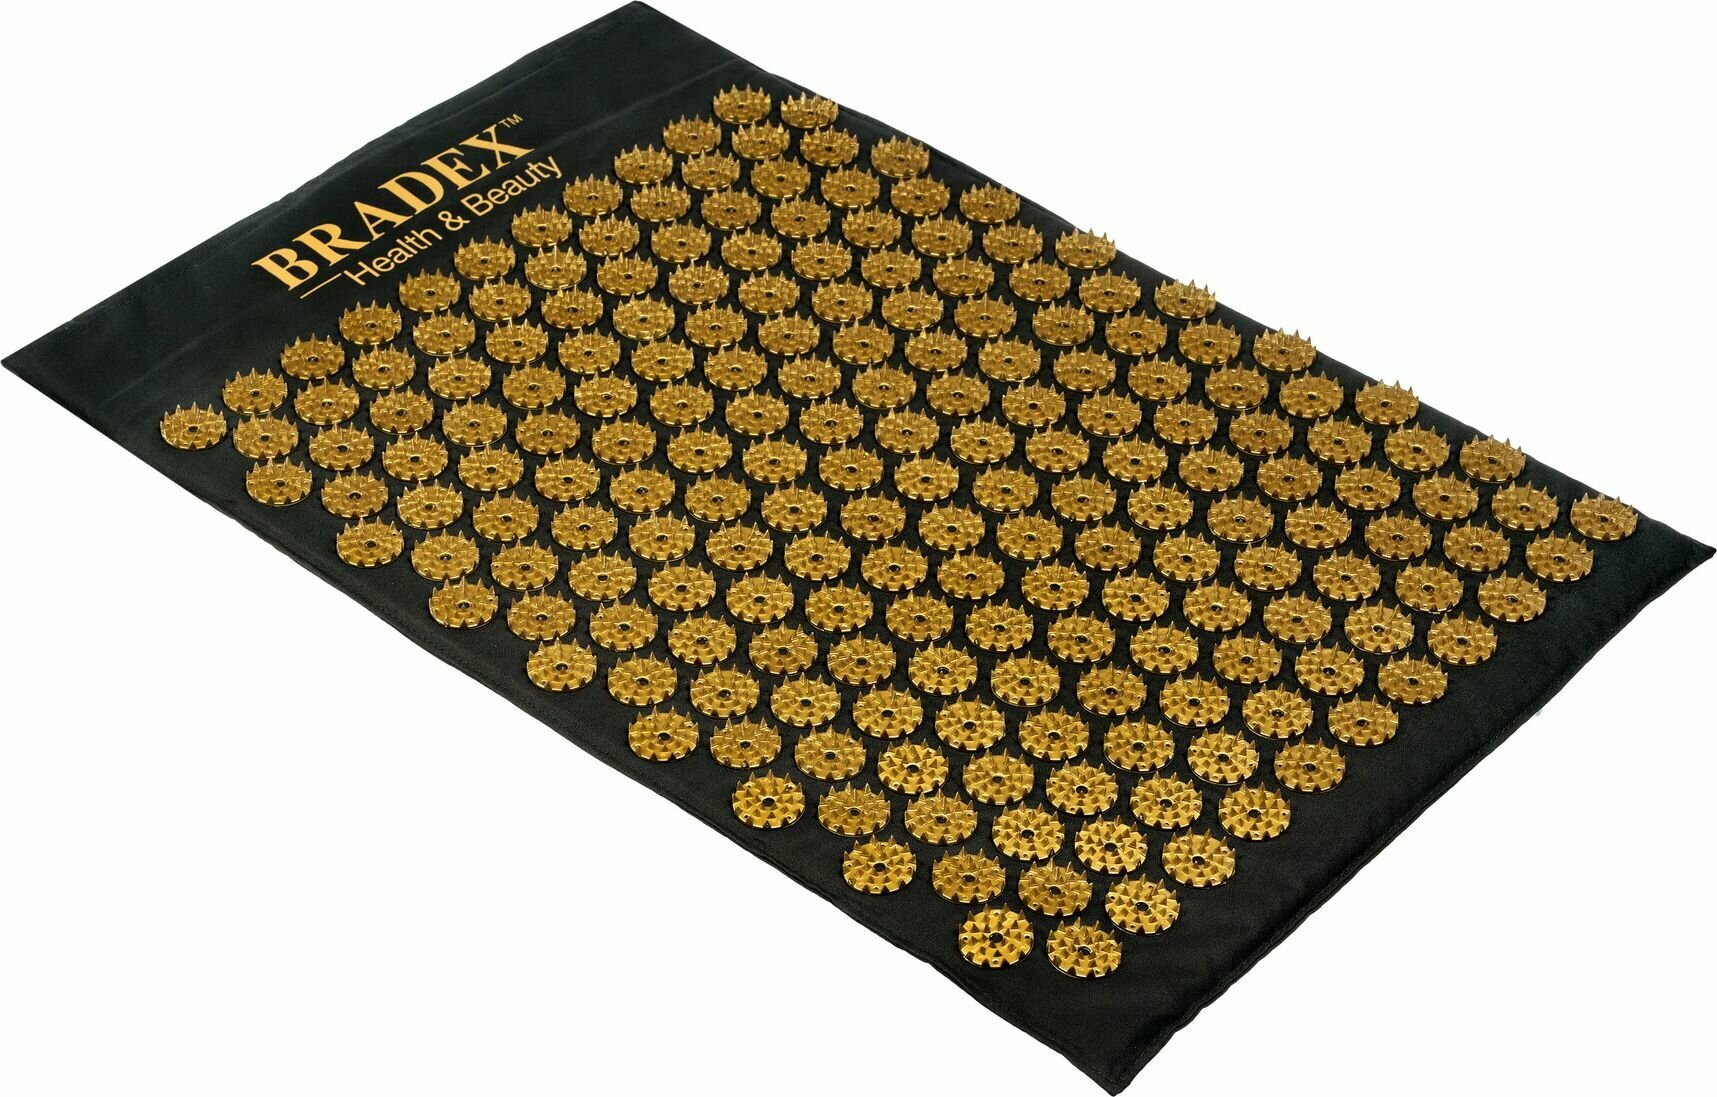 Коврик с иголками для спины акупунктурный массажный Нирвана Bradex, аппликатор кузнецова игольчатый, 60х40 см, черный, золото